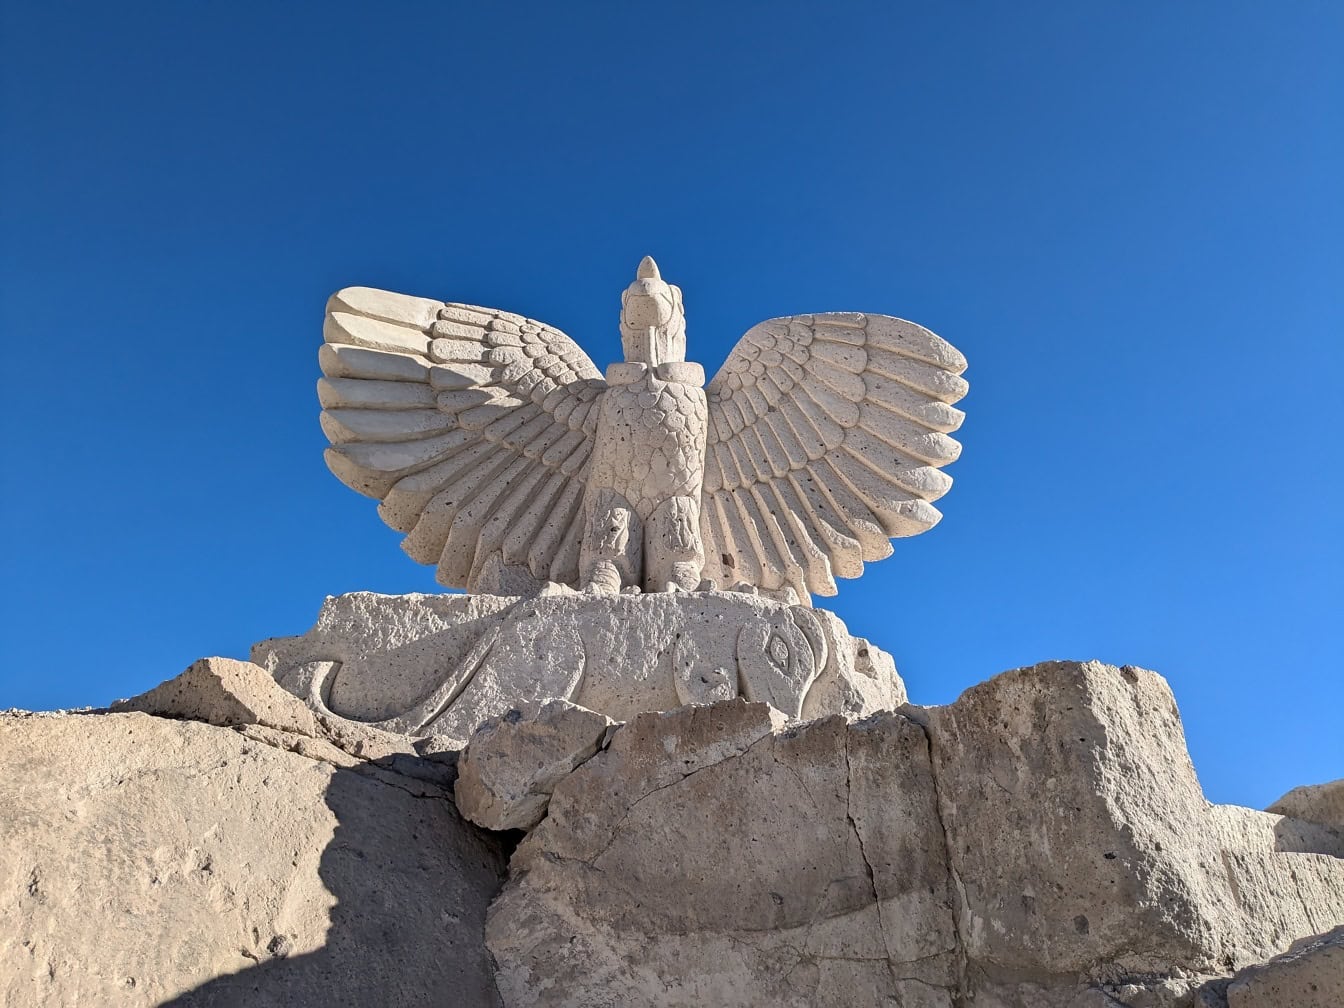 Prekrasan kip ptice sa širokim otvorenim krilima na ruti Sillar u blizini kanjona Culebrillas u Arequipi u Peruu